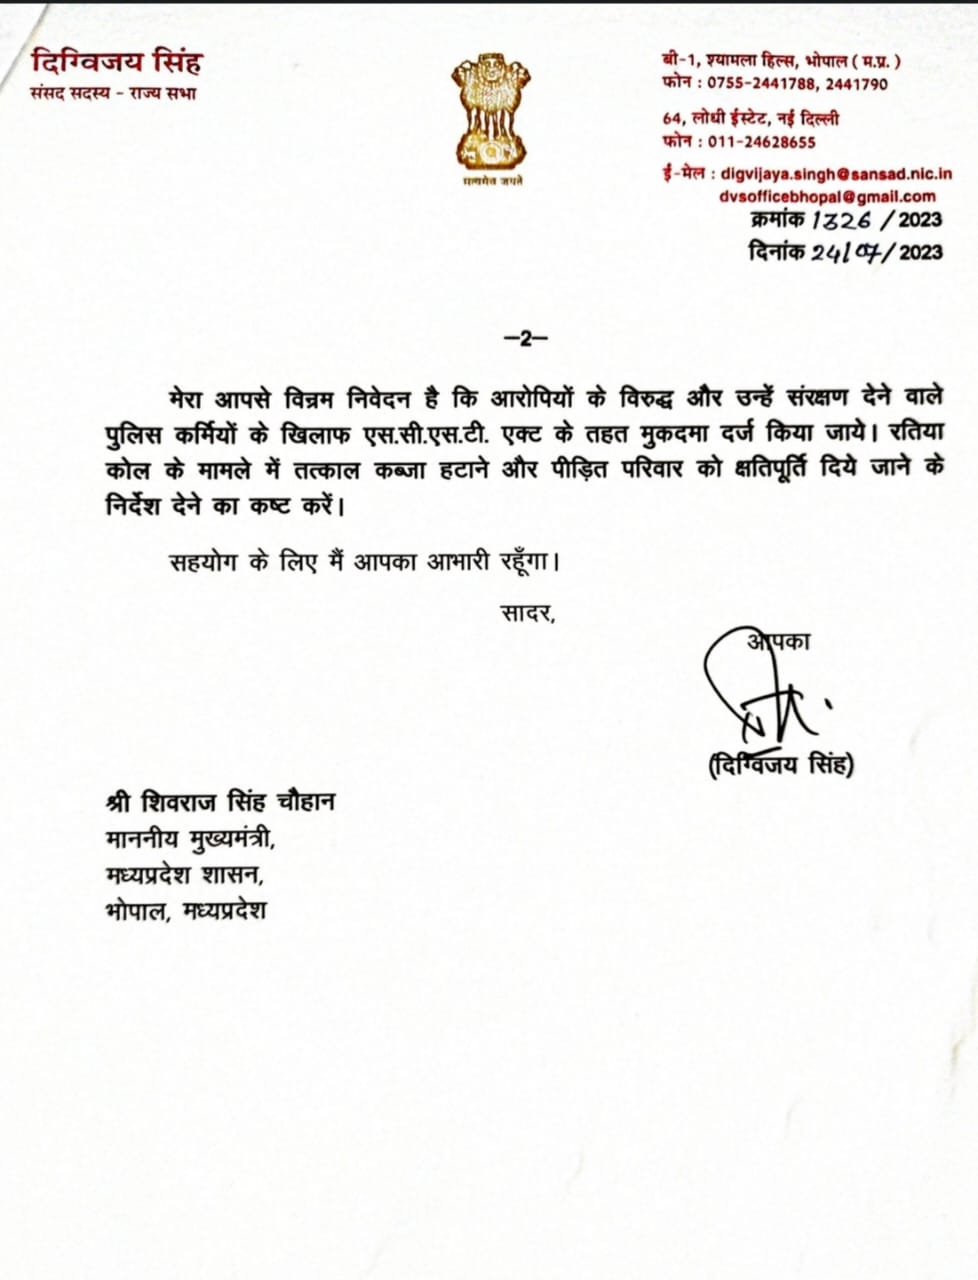 MP Politics : दिग्विजय सिंह ने मुख्यमंत्री शिवराज सिंह चौहान को लिखा पत्र, आदिवासी परिवार की जमीन से कब्जा छुड़ाने की मांग